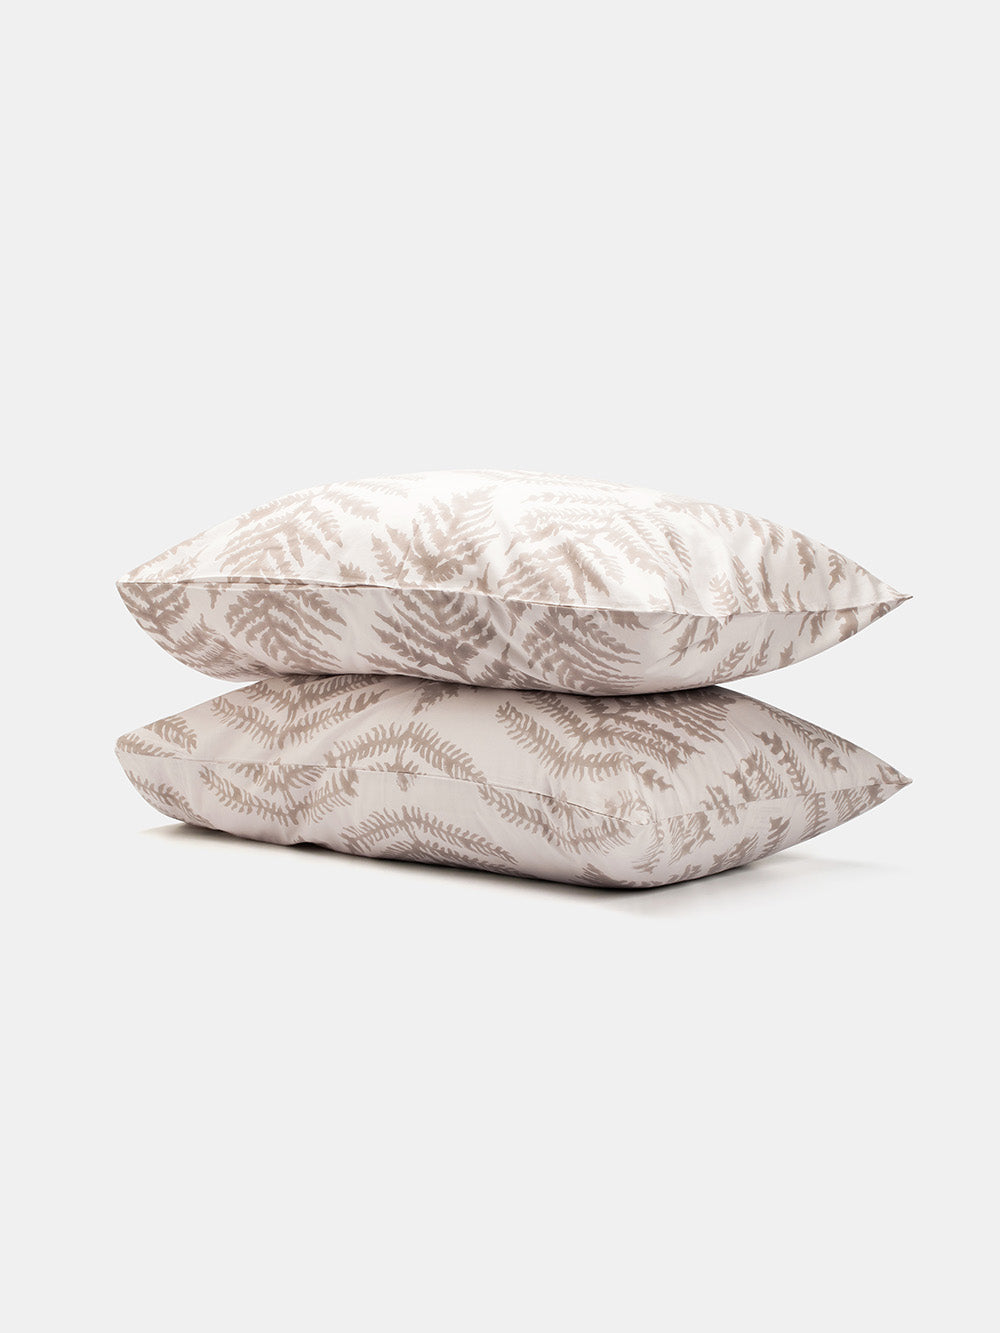 Cotton Pillowcase Pair in Fern